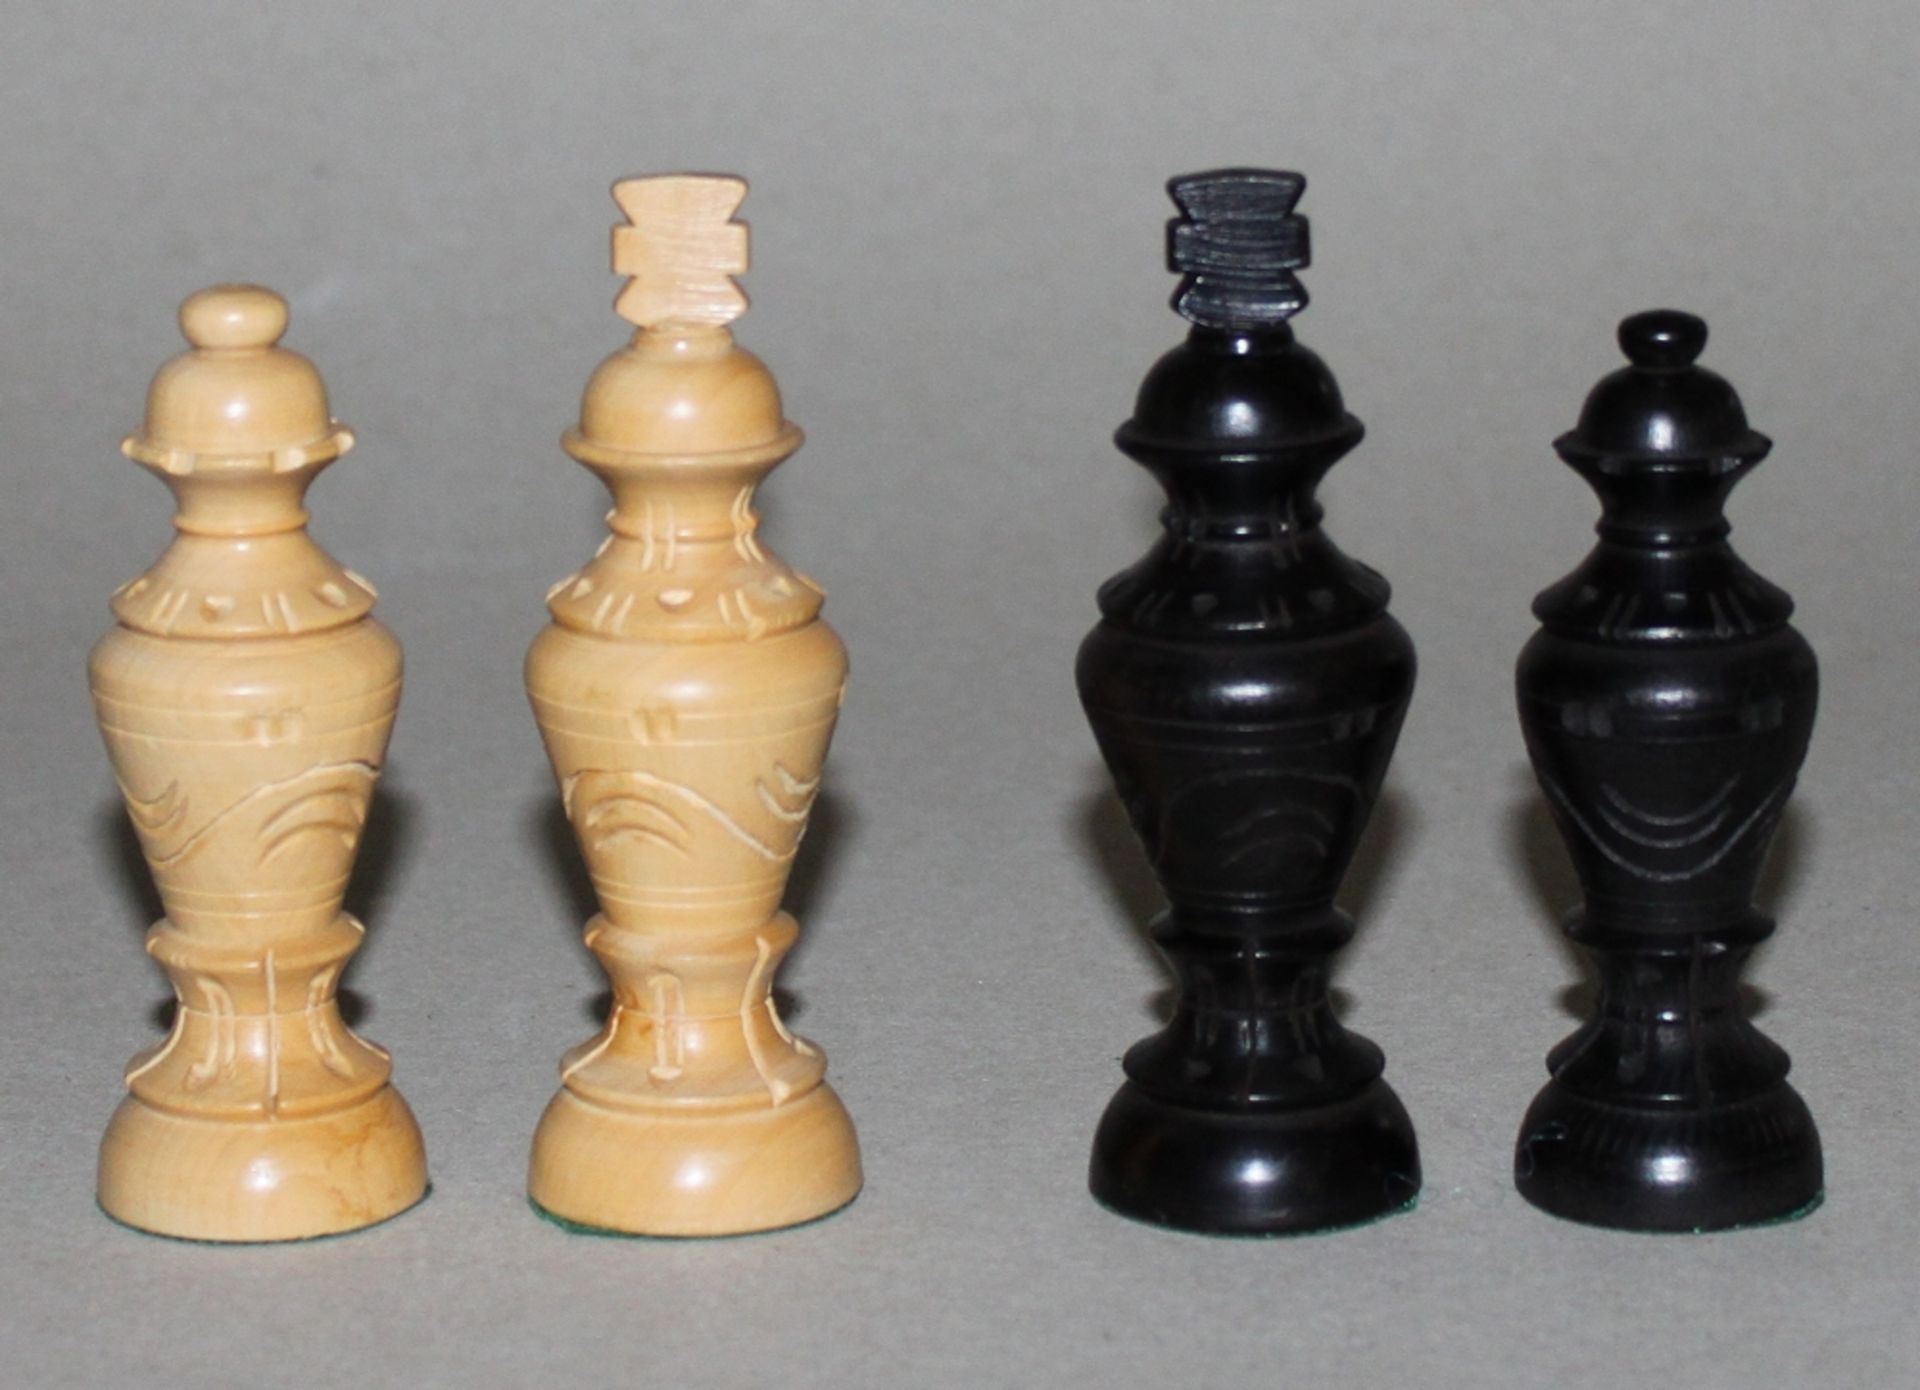 Europa. Tschechien. Schachspiel aus Holz. Die eine Partei dunkel, die andere naturfarben. Arbeit aus